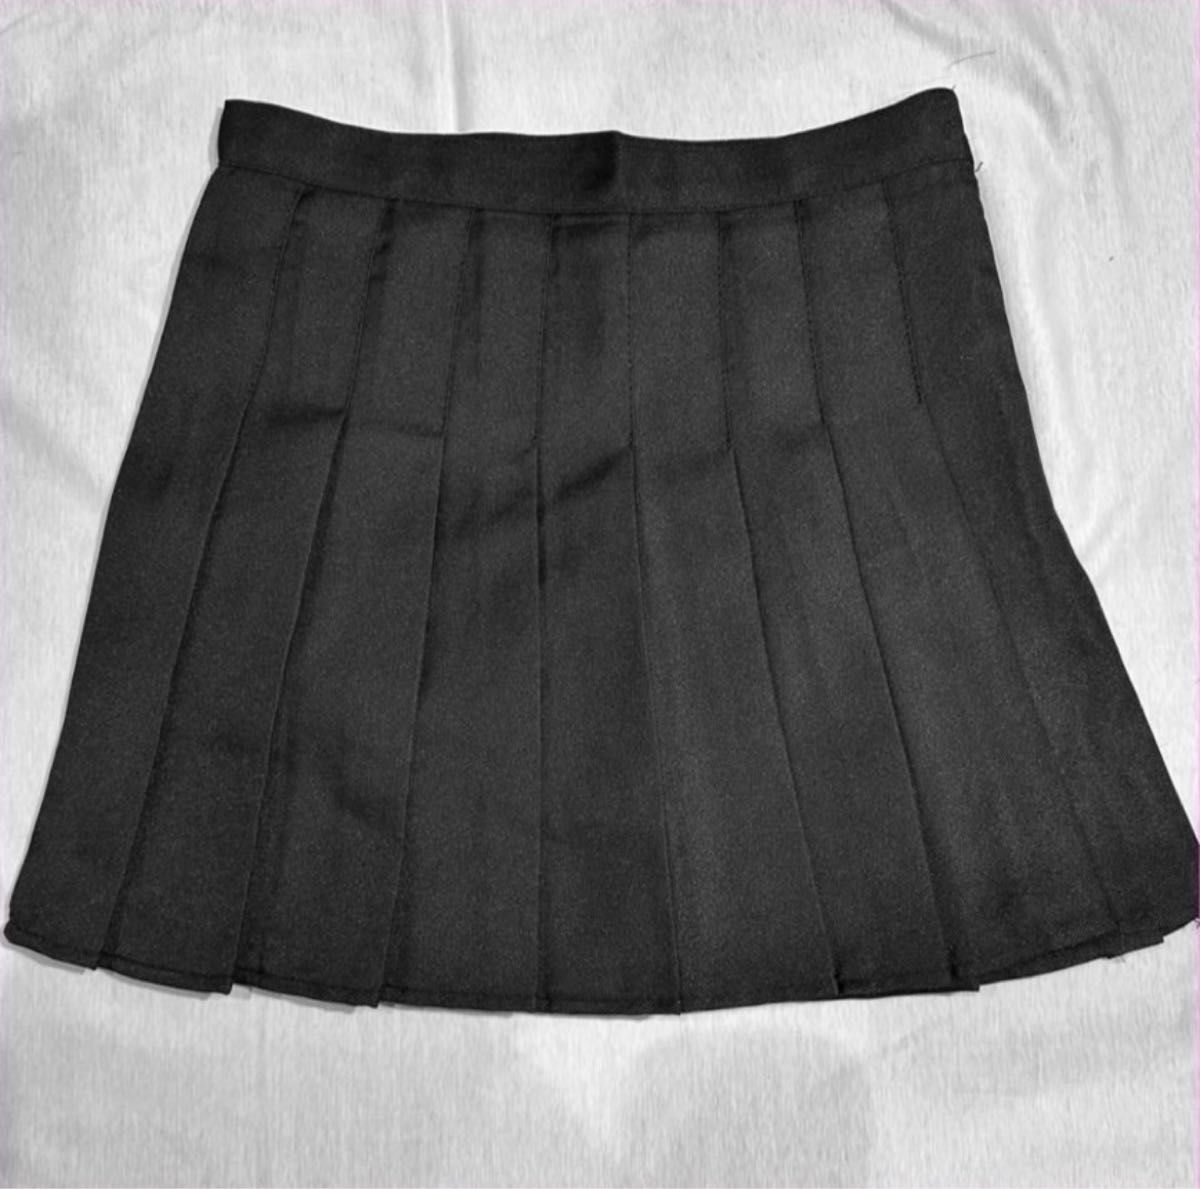 スカート プリーツスカート ミニスカート 美脚 韓国ファッション  制服 